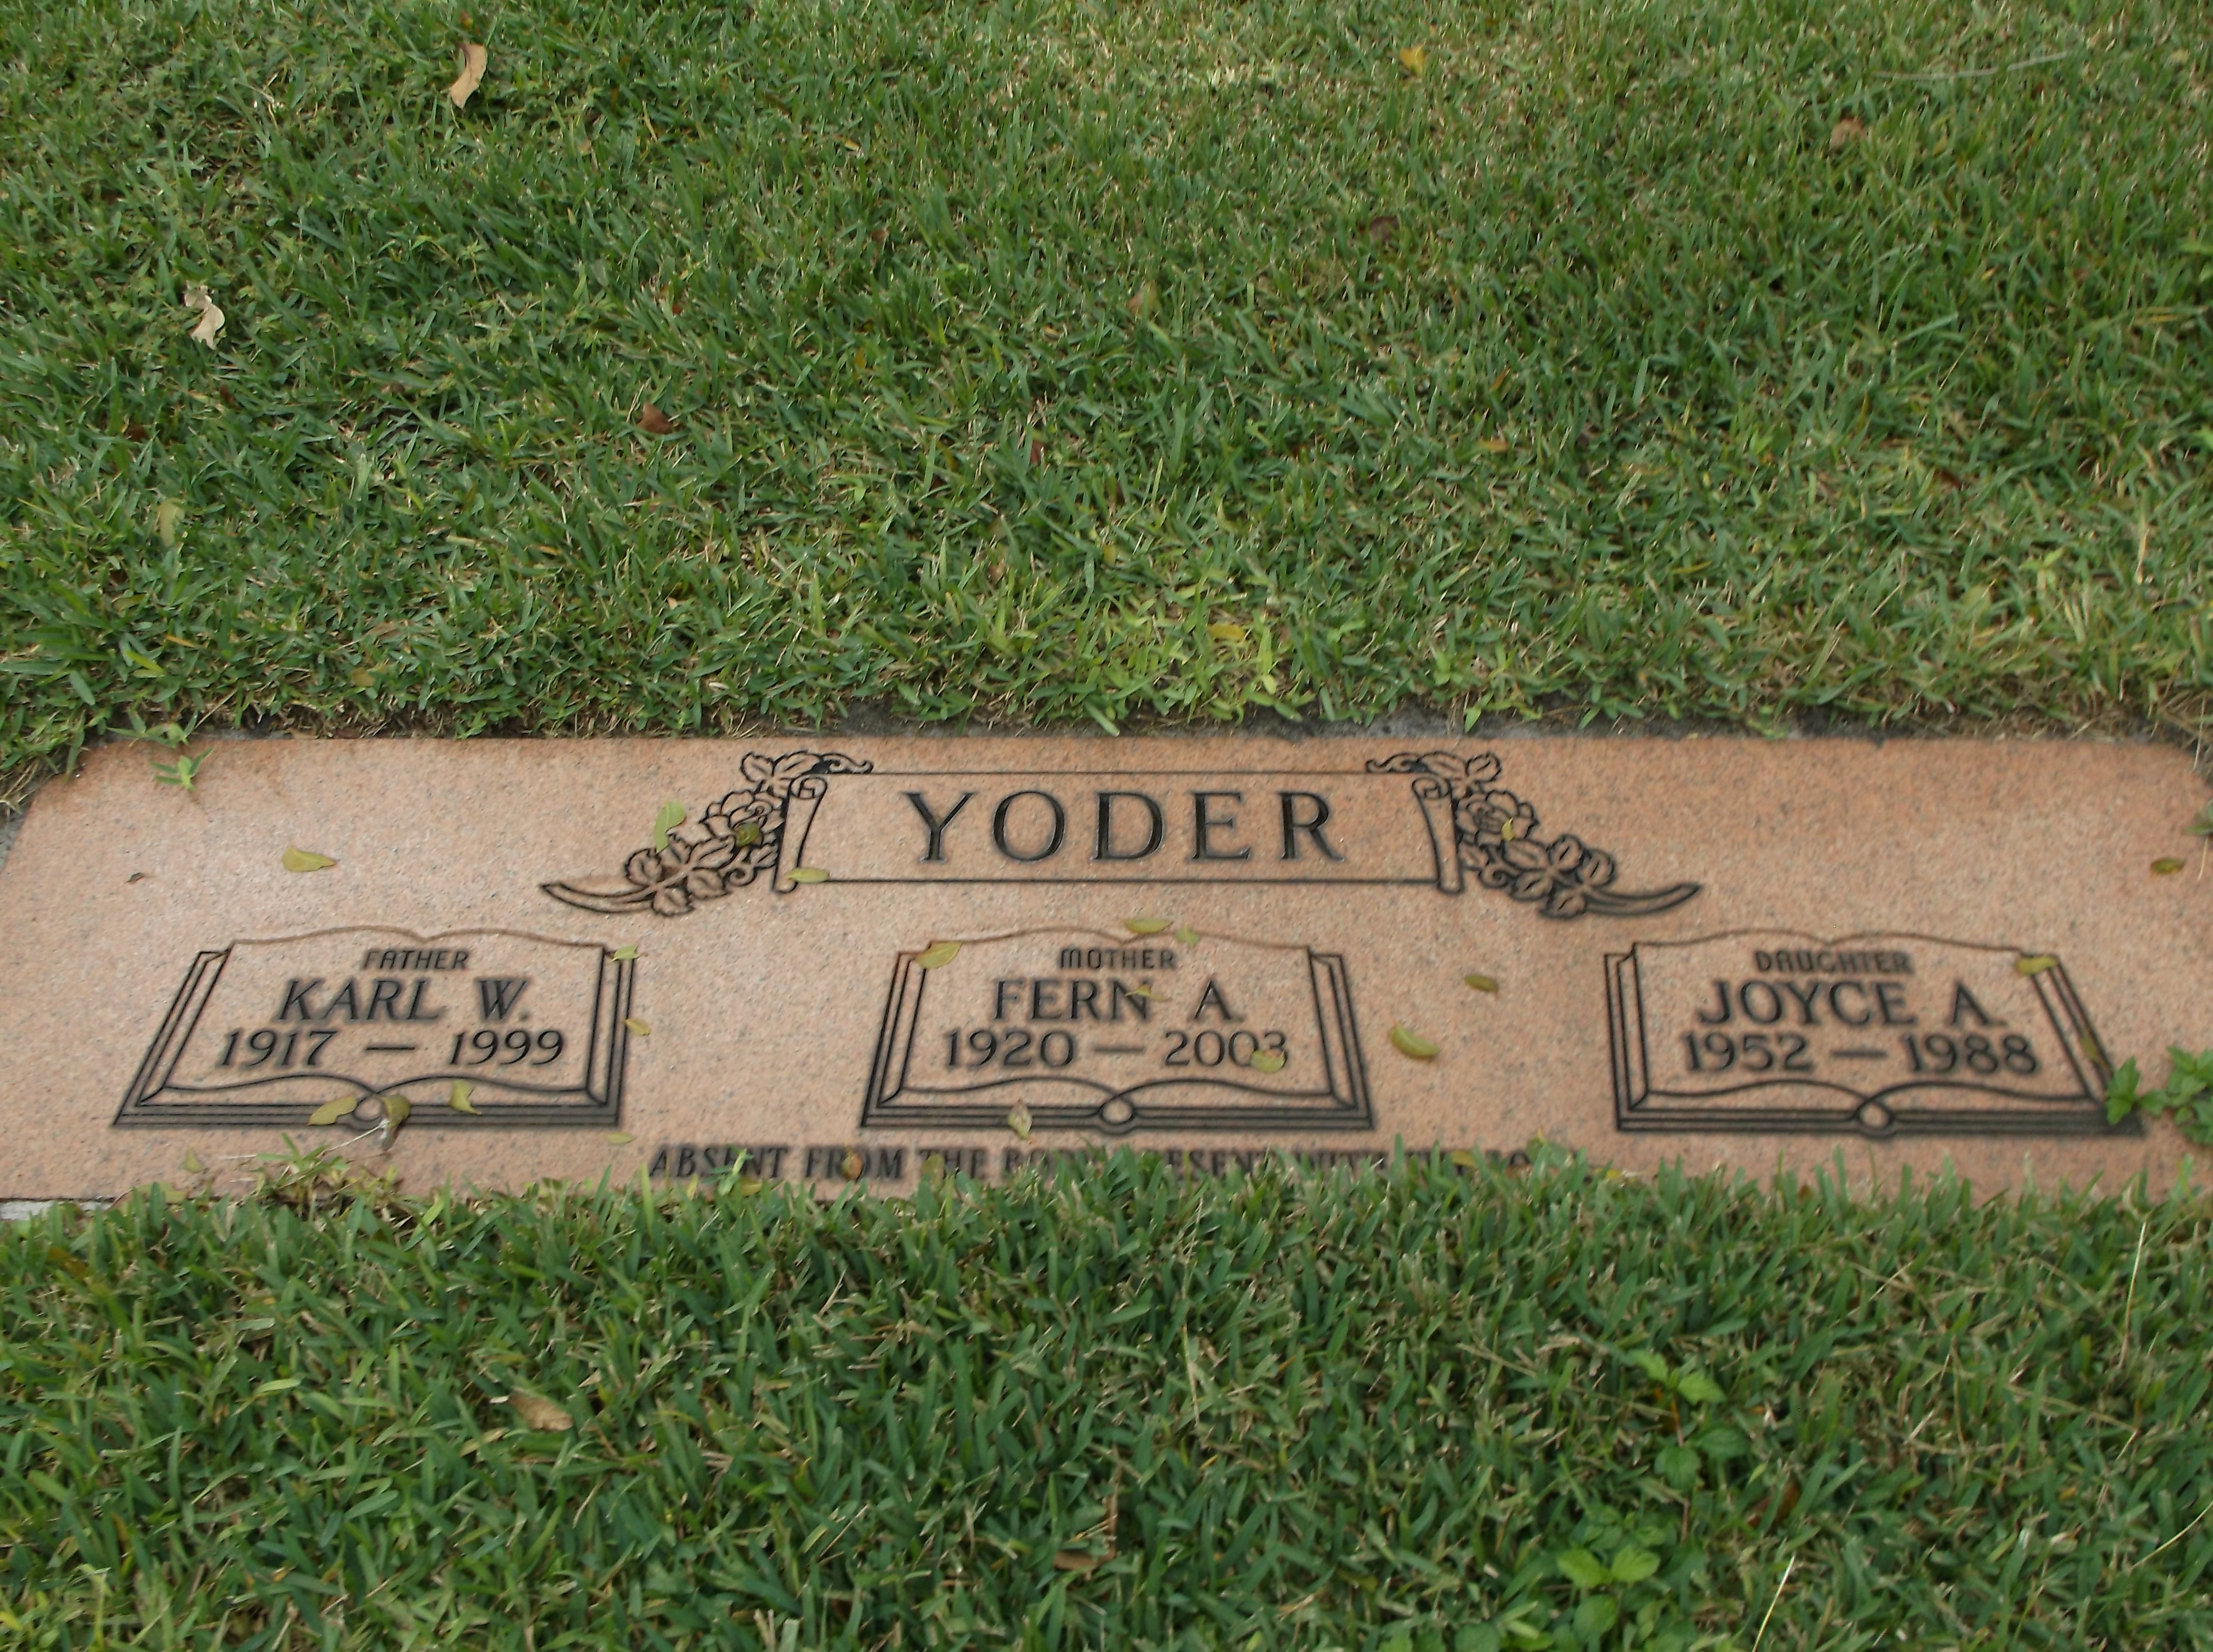 Joyce A Yoder